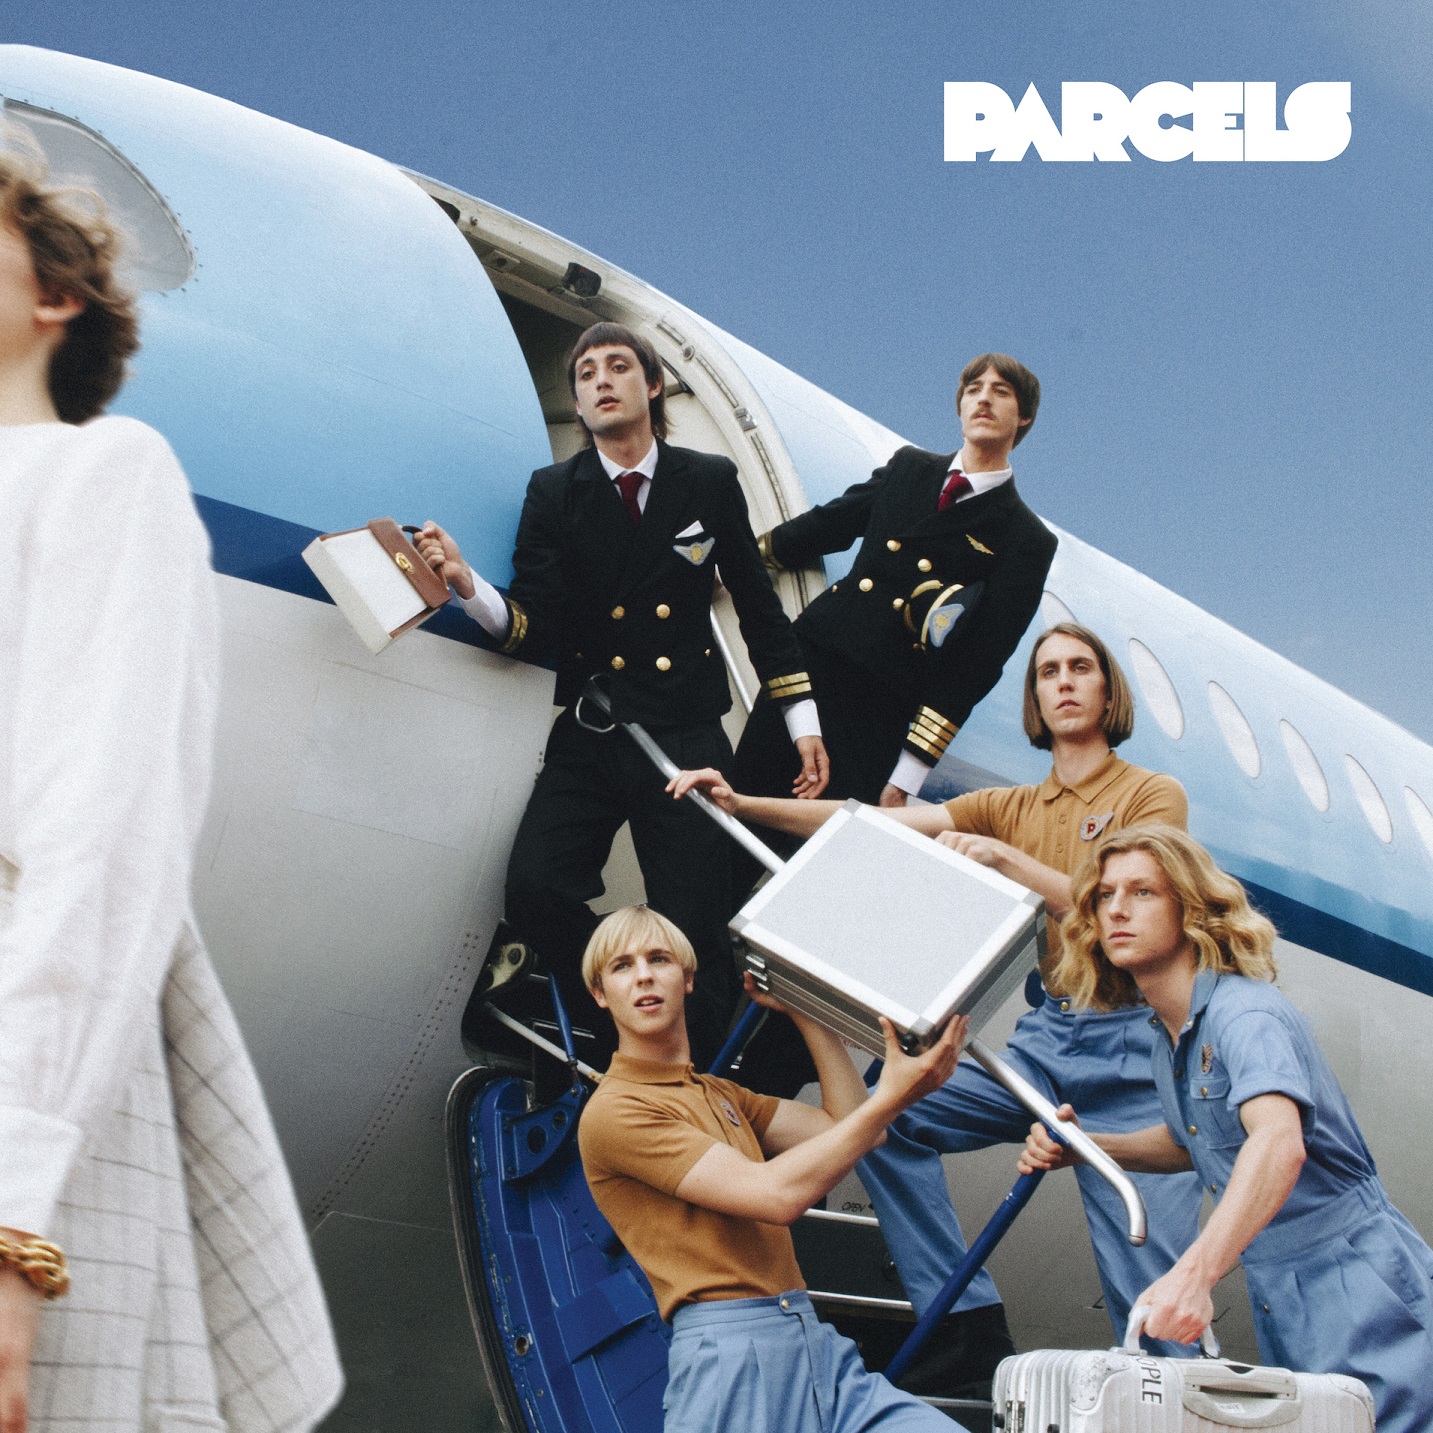 Parcels album cover